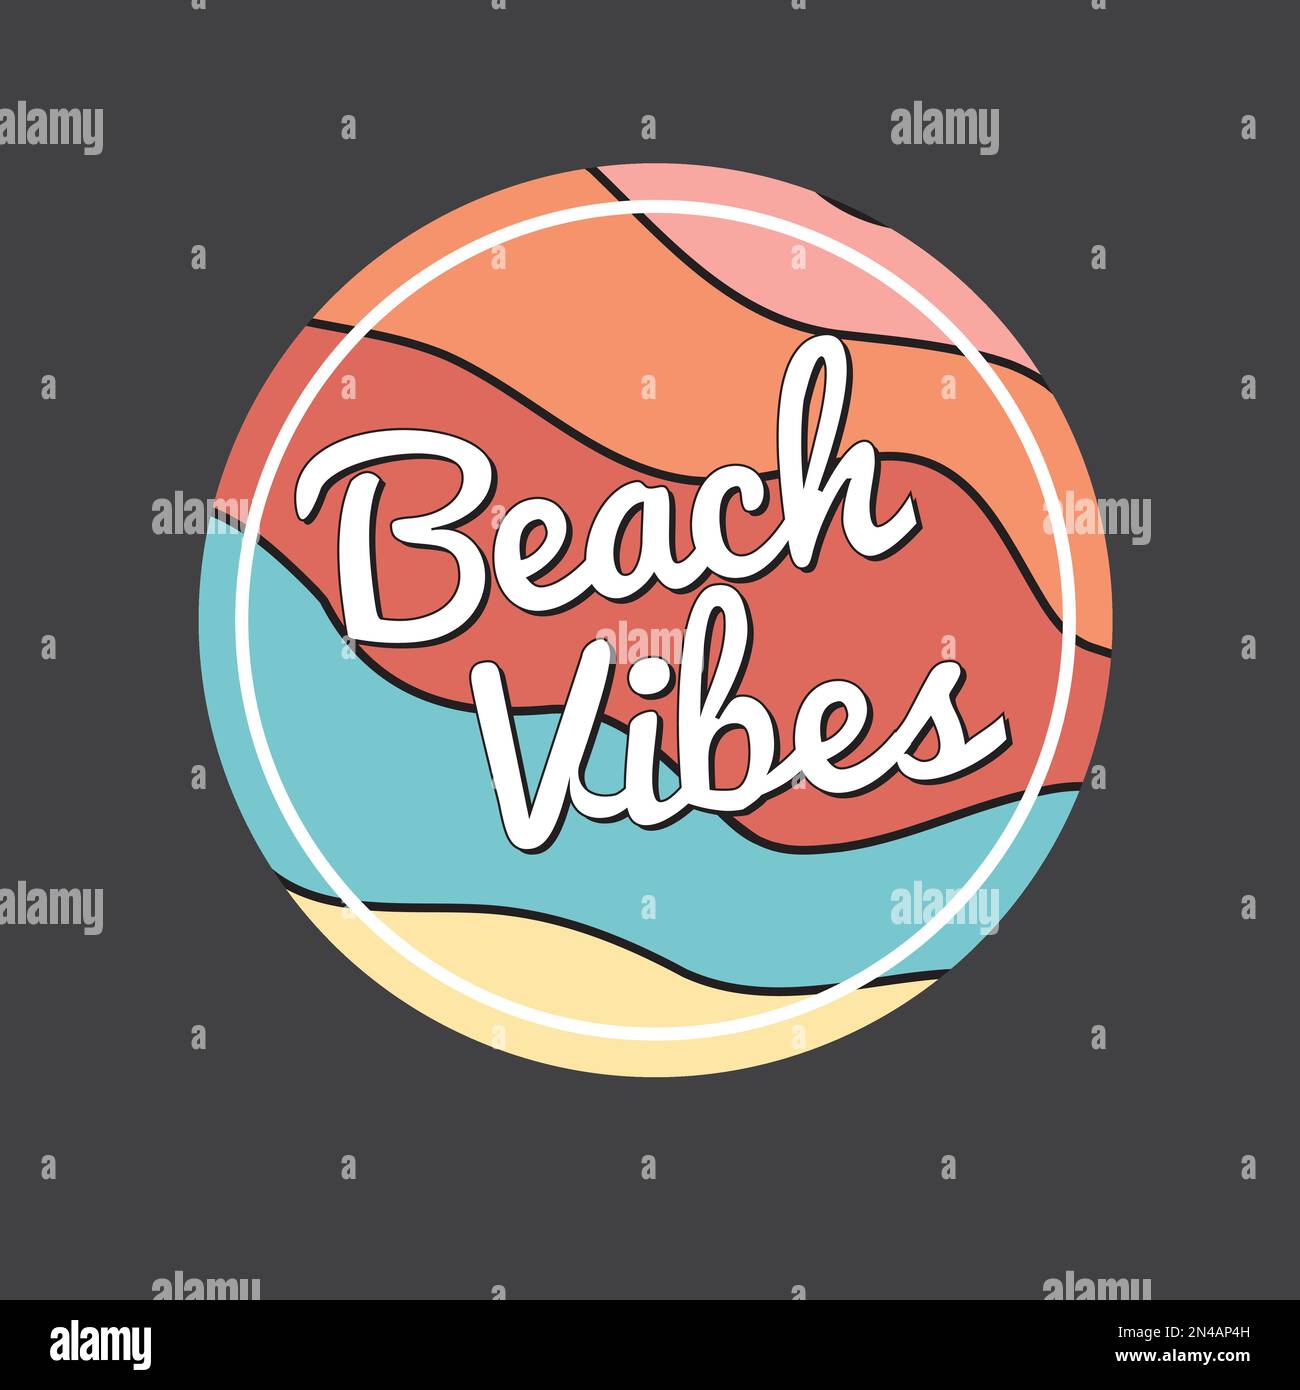 Beach Vibes verano ola retro diseño gráfico de forma redonda etiqueta engomada vector de impresión Ilustración del Vector